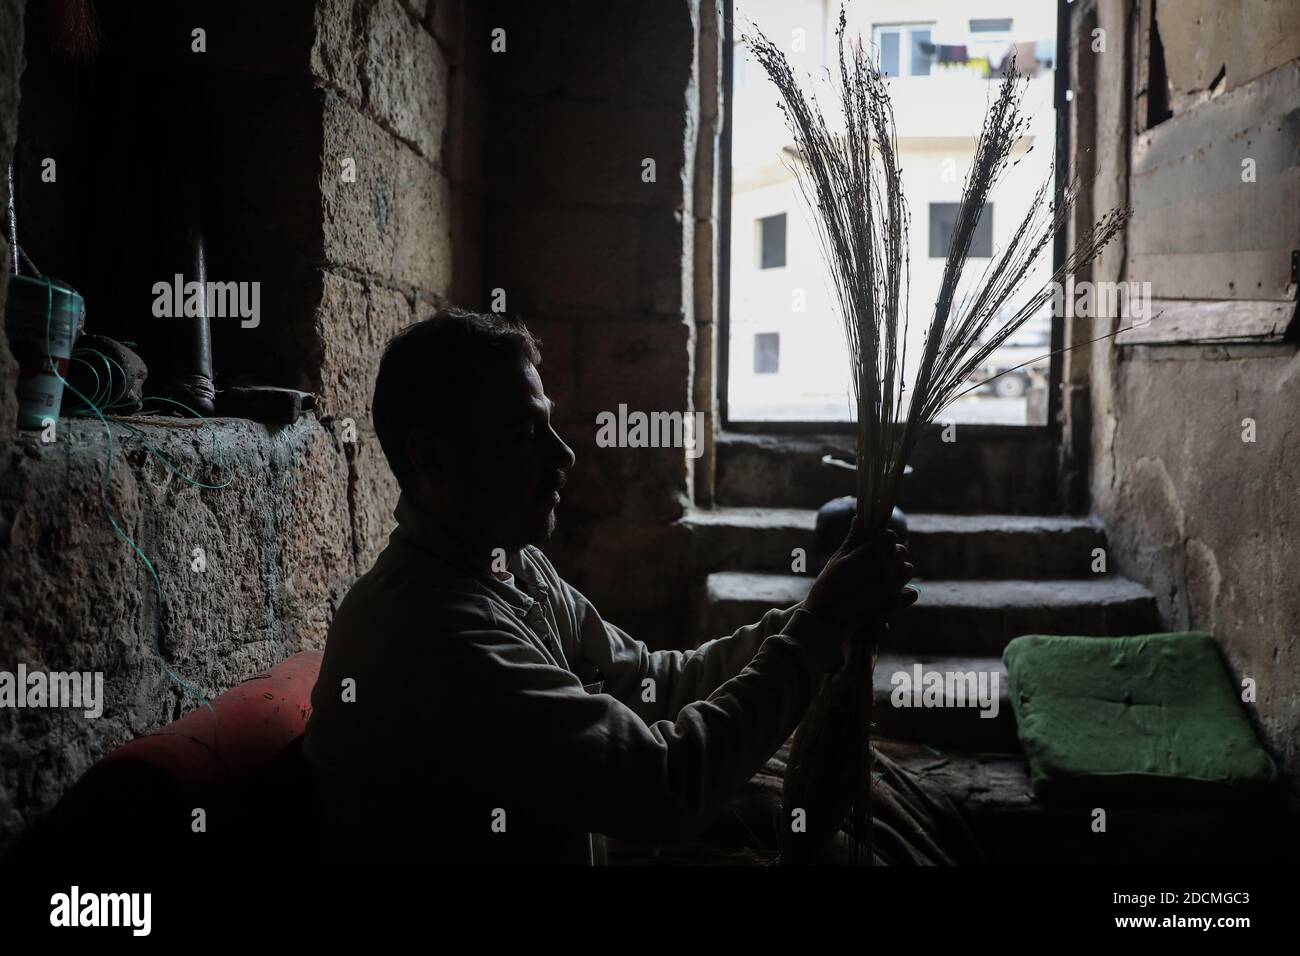 Idlib City, Syrie. 22 novembre 2020. Un ouvrier fabrique des balais de paille faits main dans un petit atelier dans un quartier populaire de la ville d'Idlib. La fabrication de balais de paille a été active au cours des dernières années en raison de la dépendance des résidents au lieu des outils électriques en raison des coupures de courant. Credit: Aras Alkharboutli/dpa/Alamy Live News Banque D'Images